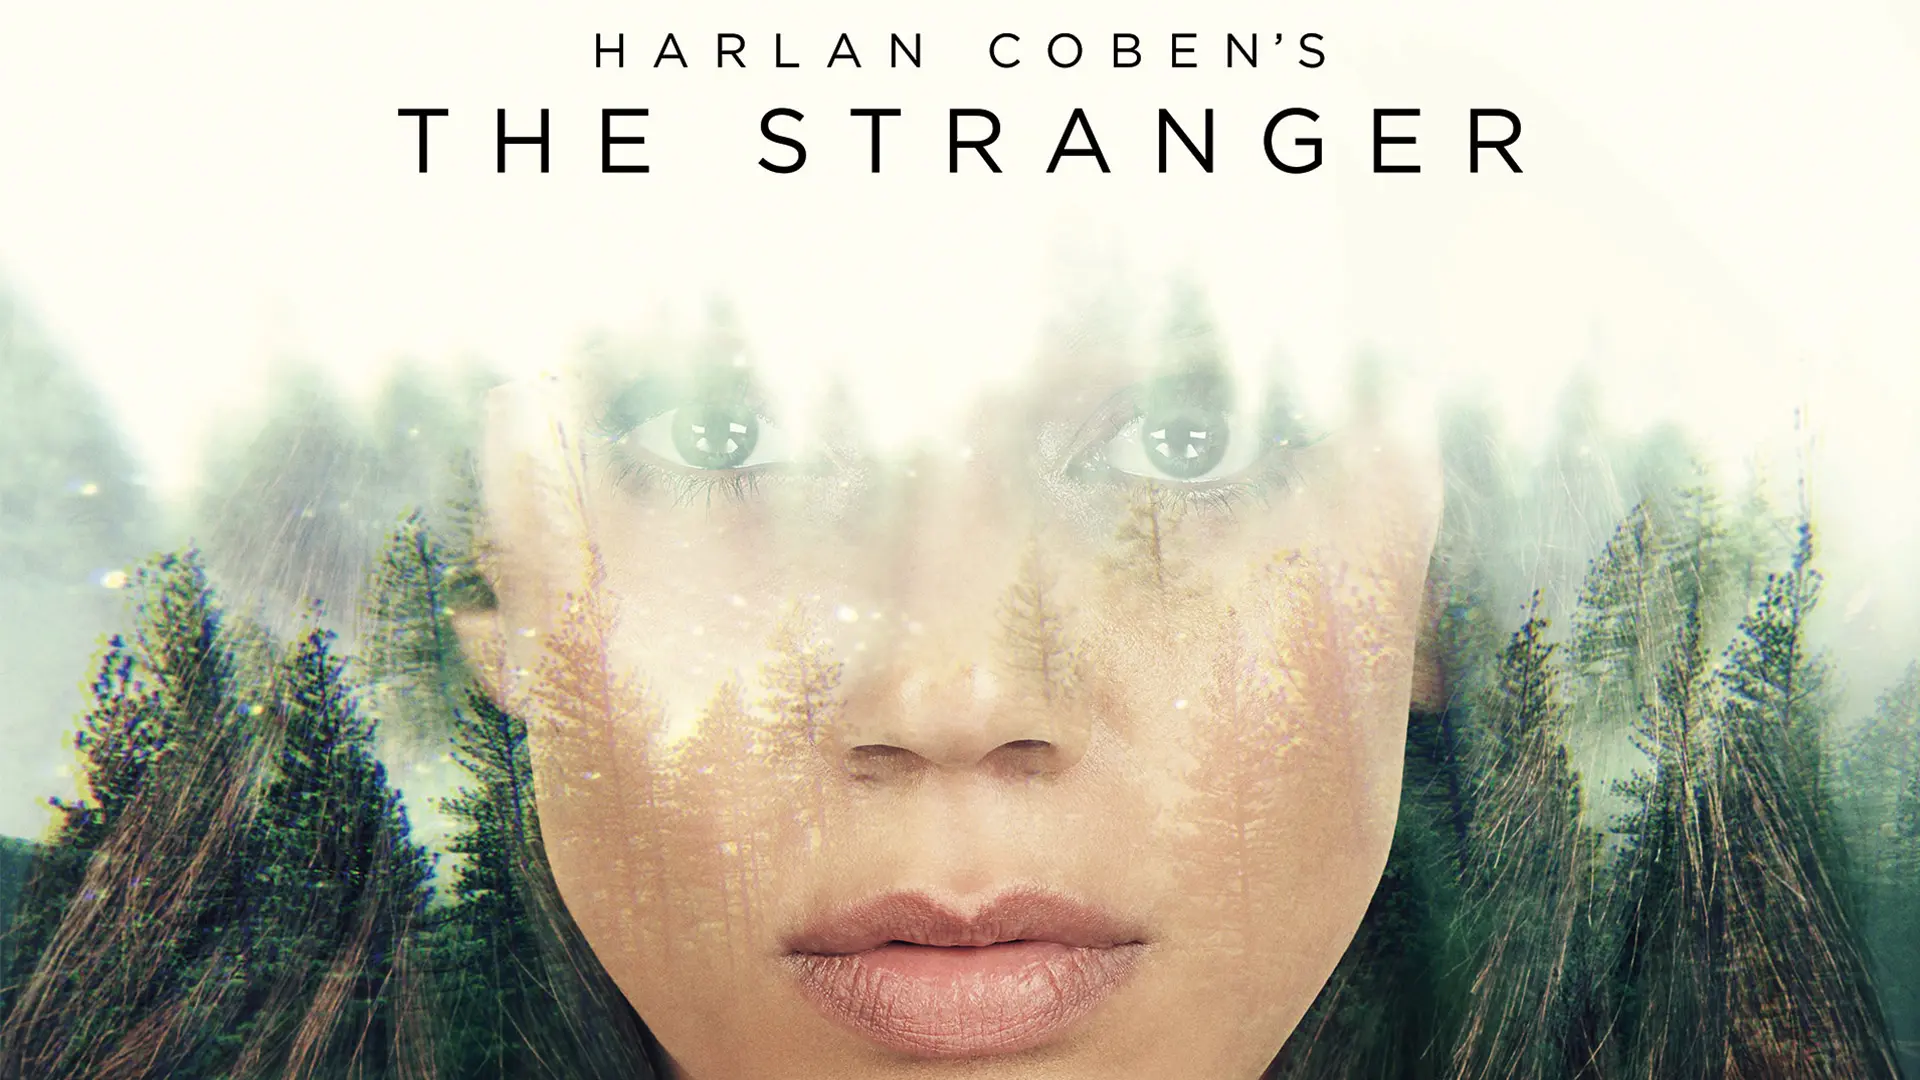 Harlan Coben's The Stranger